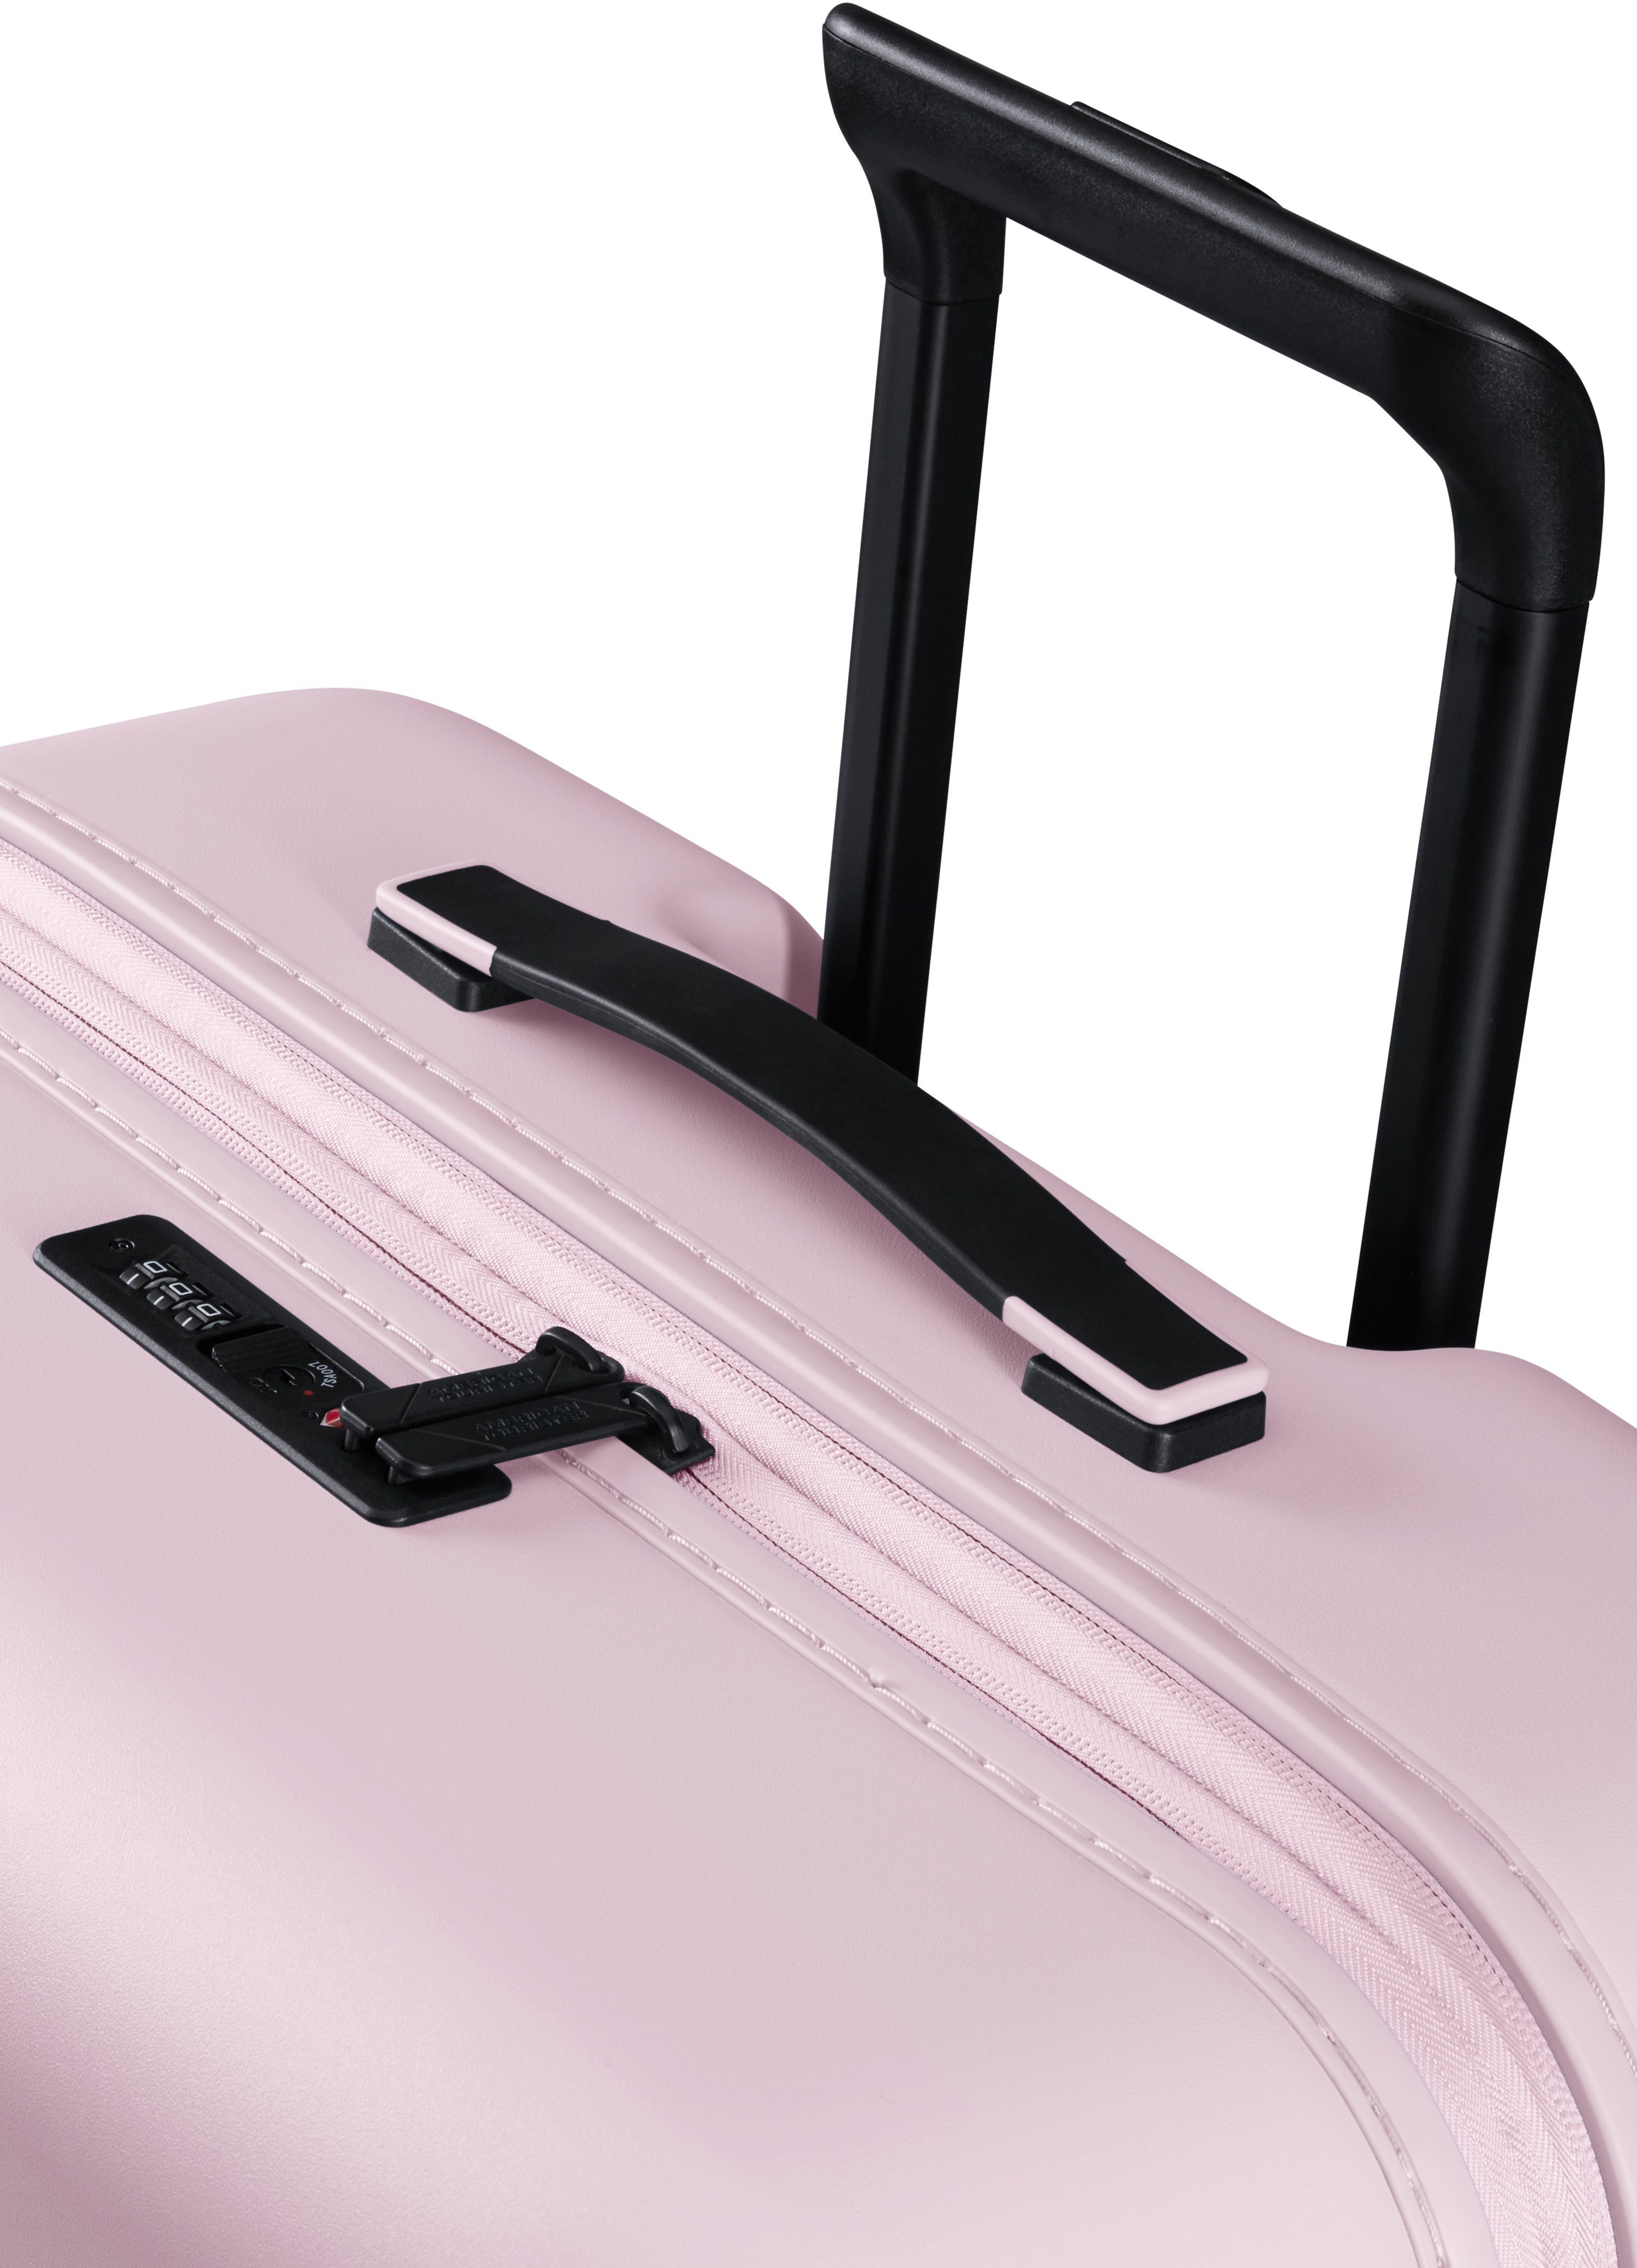 Tourister® mit Soft 4 Volumenerweiterung Pink 77 American cm, Hartschalen-Trolley Novastream, Rollen,